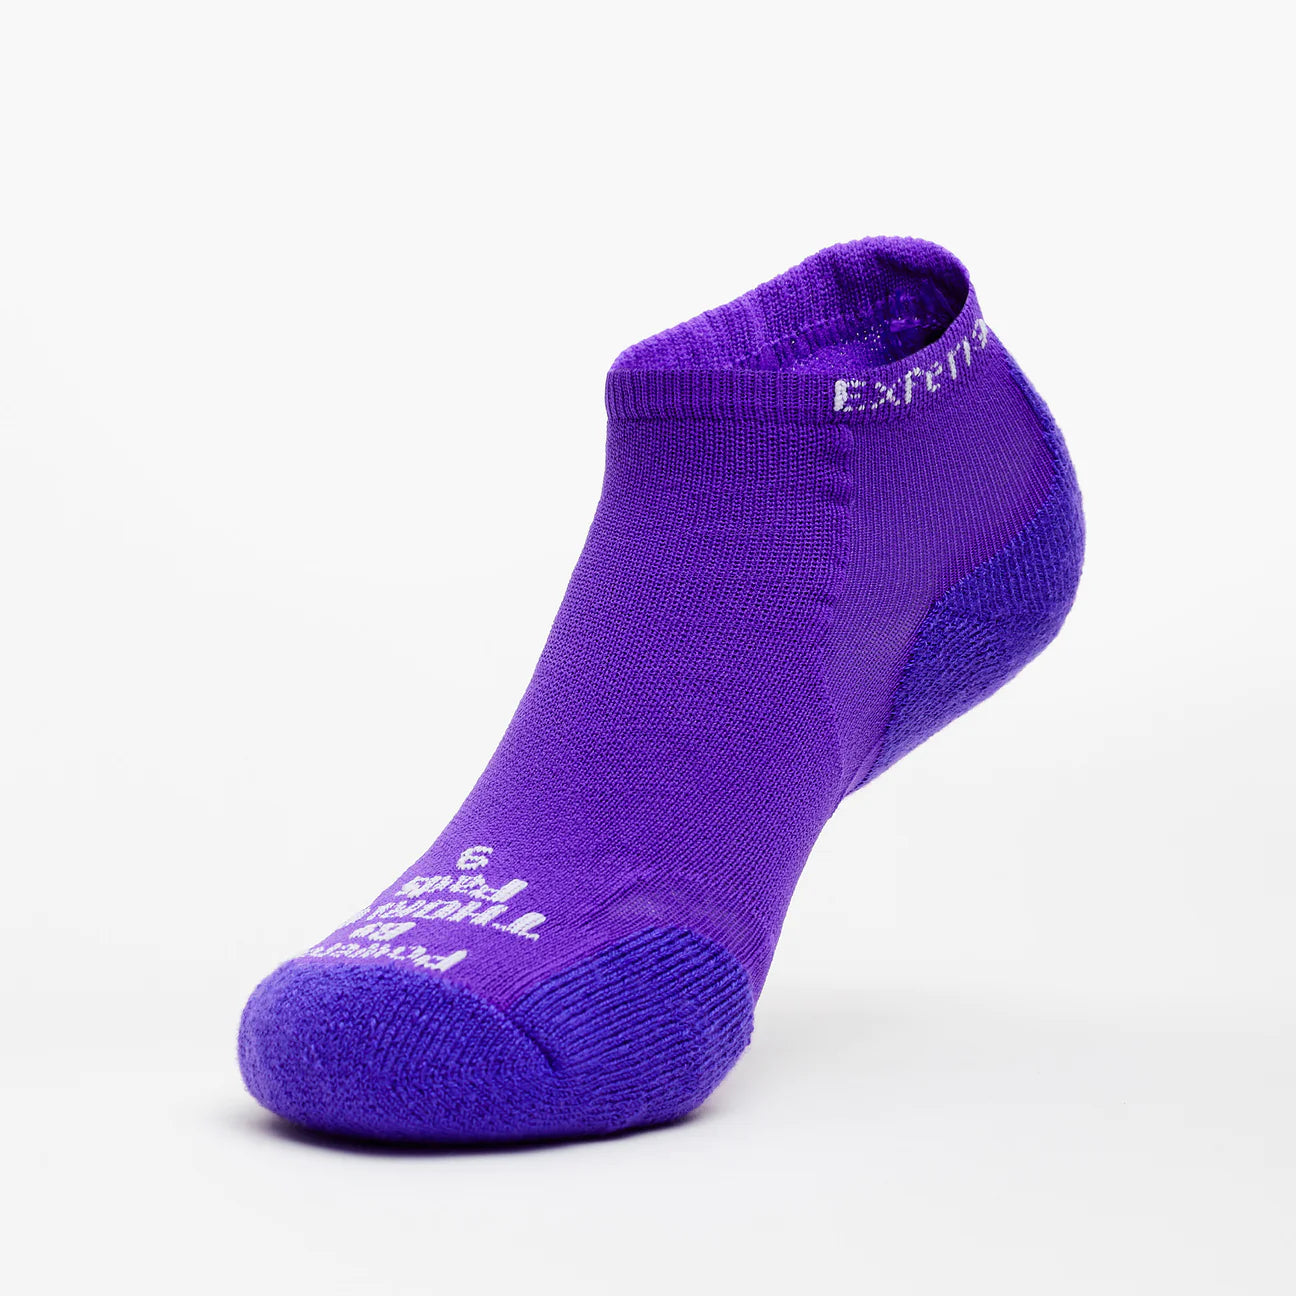 Thorlo Experia TIGER PAWS Lite Cushion Low Cut Socks (Unisex) - Purple